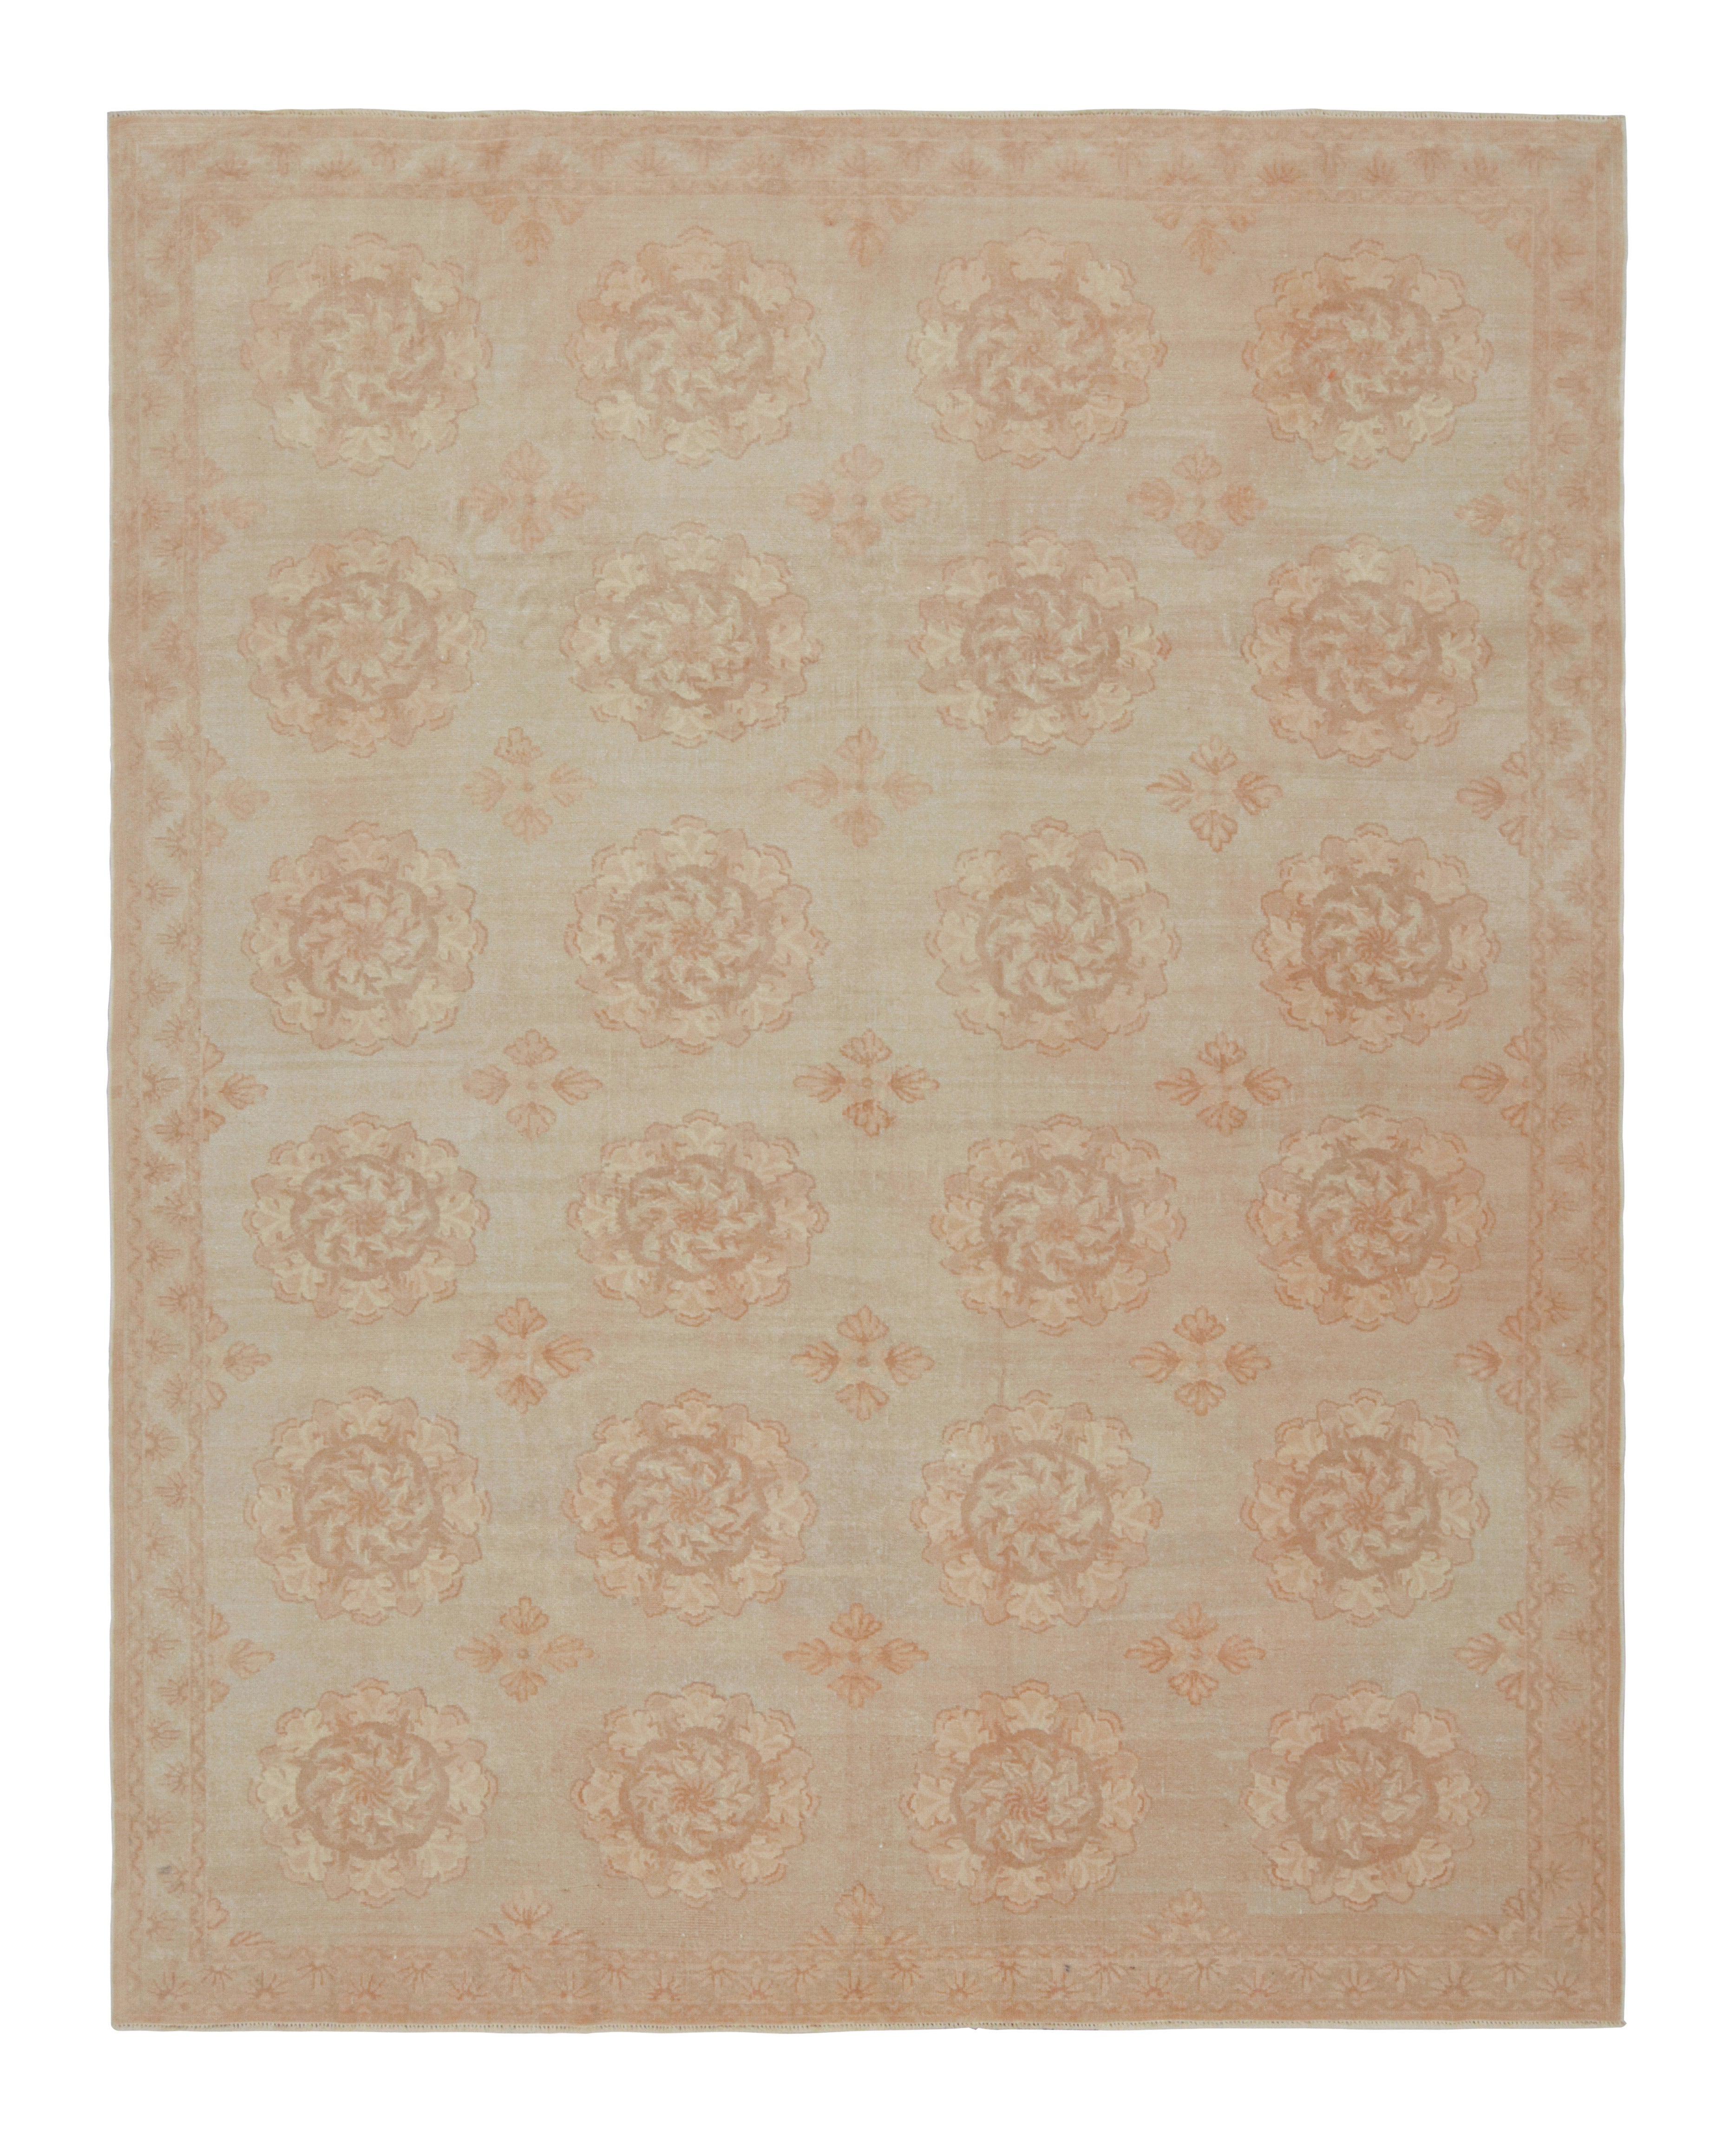 Rug & Kilim's Contemporary European Style Teppich mit beige-braunen Blumenmedaillons